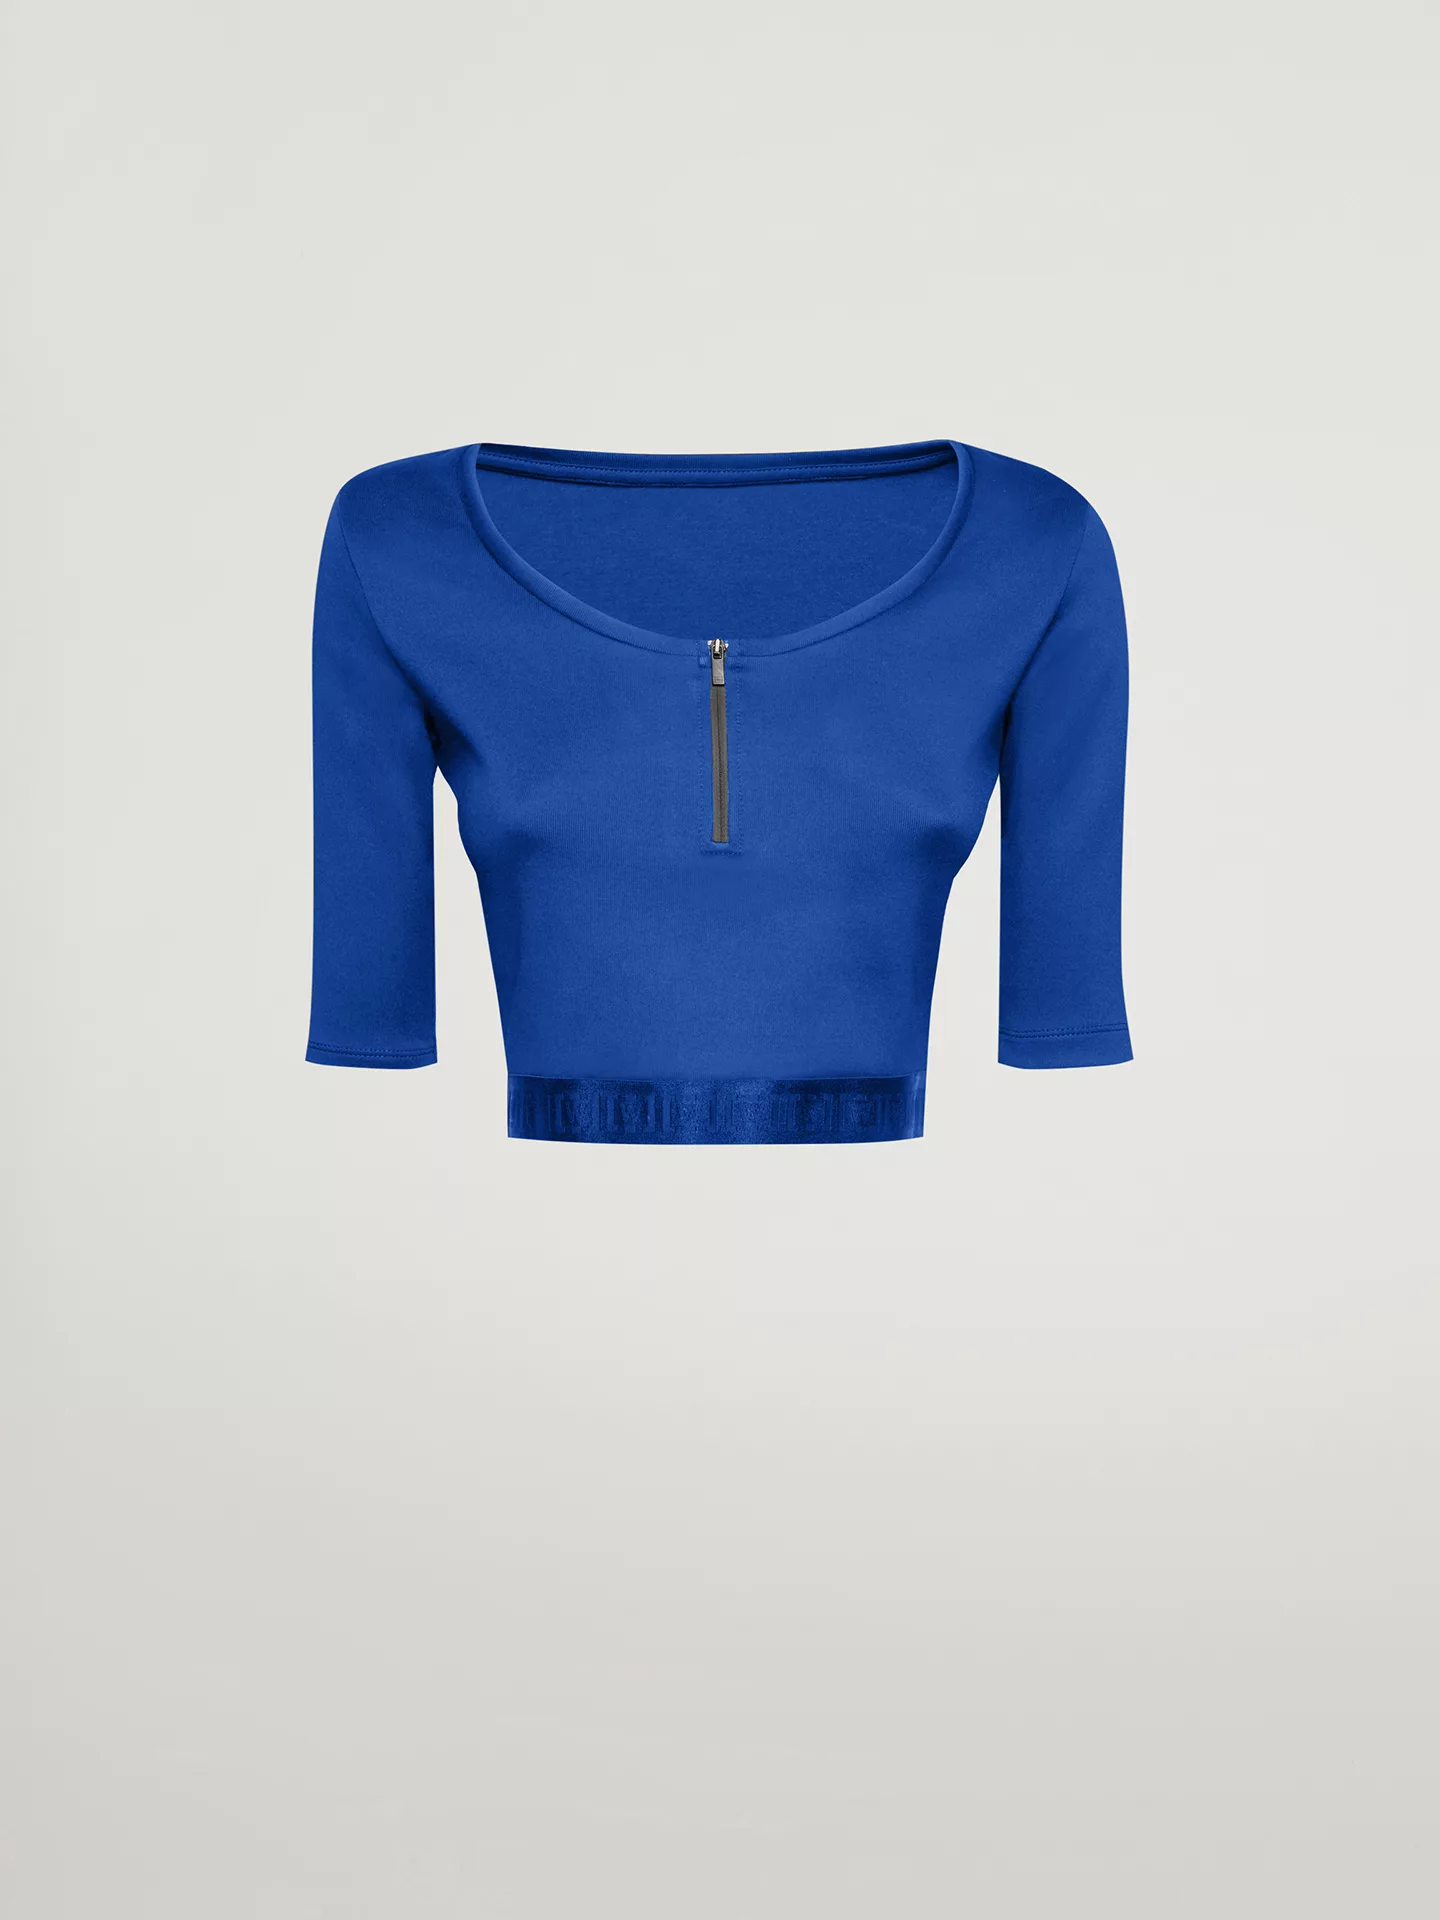 Wolford - Mighty 80s Top Short Sleeves, Frau, dazzling blue, Größe: S günstig online kaufen